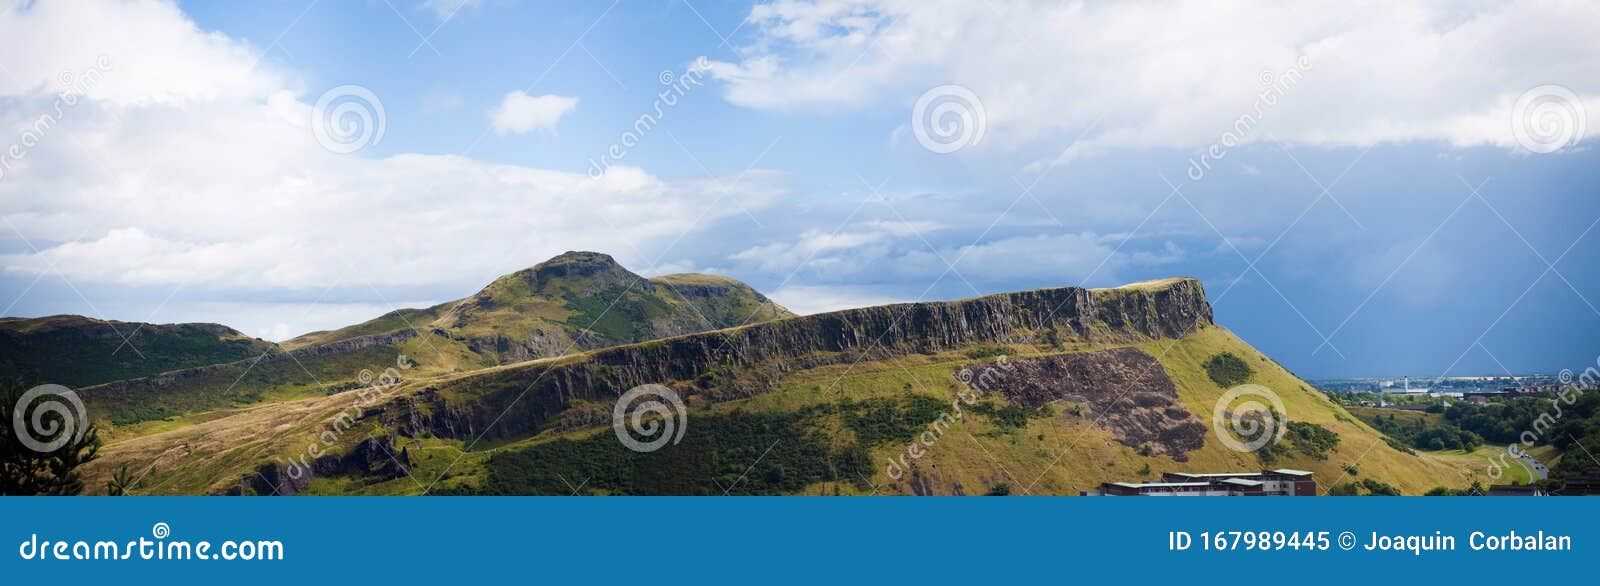 Panorâmica da colina do assento do Arthur, perto da cidade escocesa de Edimburgo